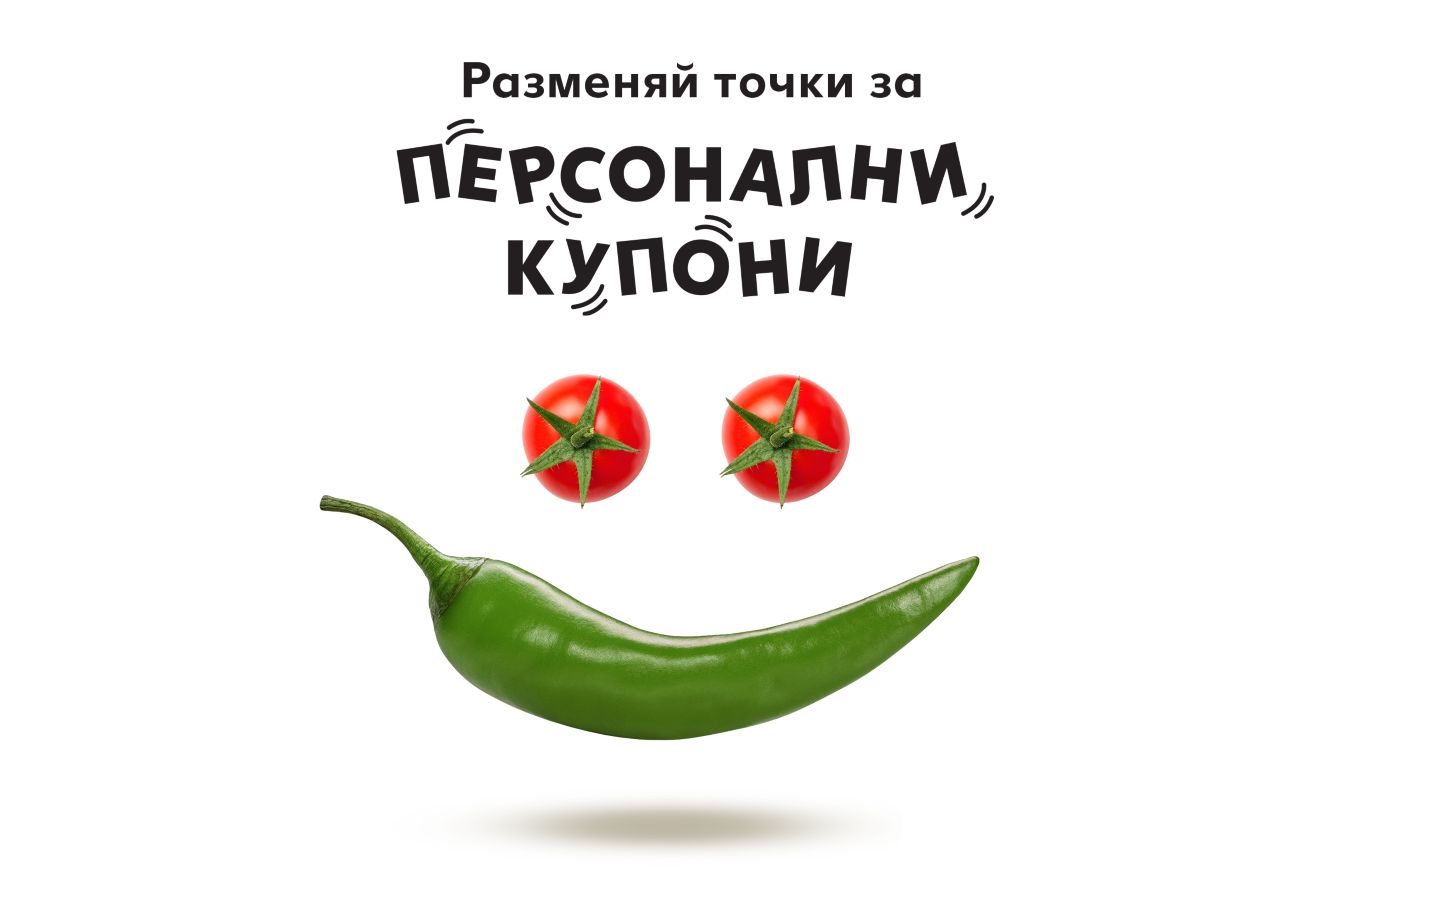 Изображение на усмивка от свежи чери домати и зелена чушка